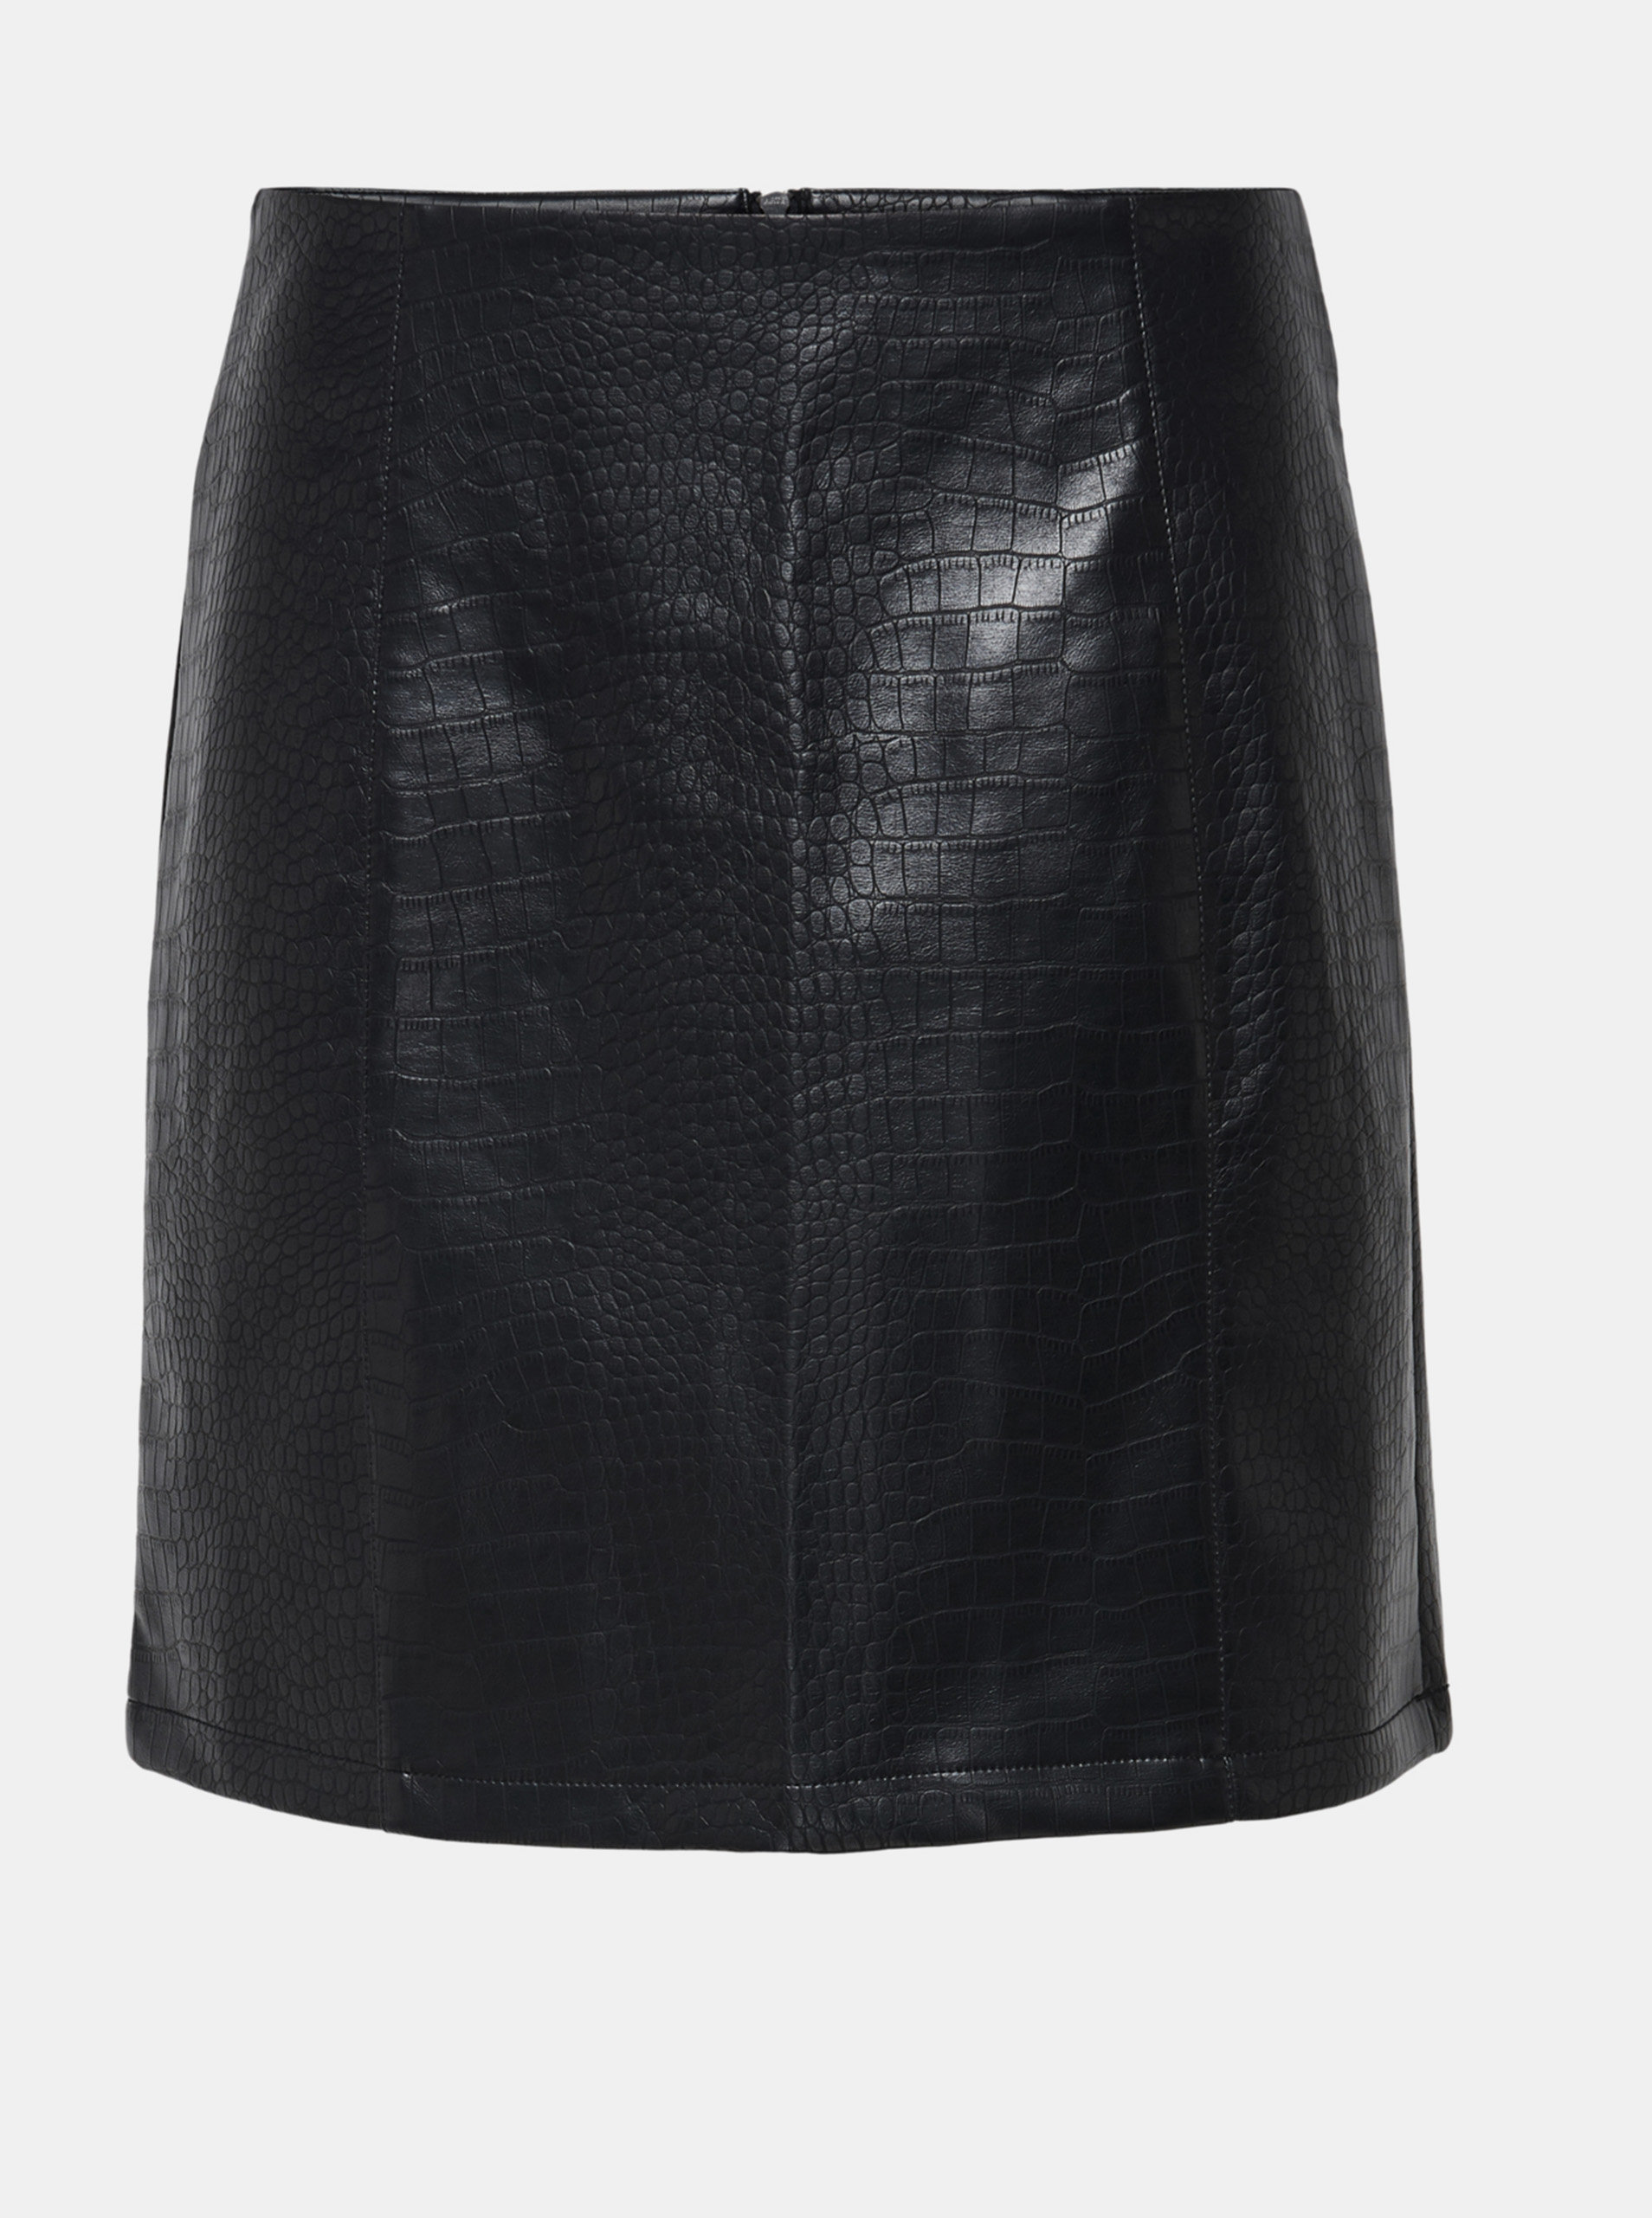 Fotografie Černá koženková sukně s krokodýlím vzorem Jacqueline de Yong Val